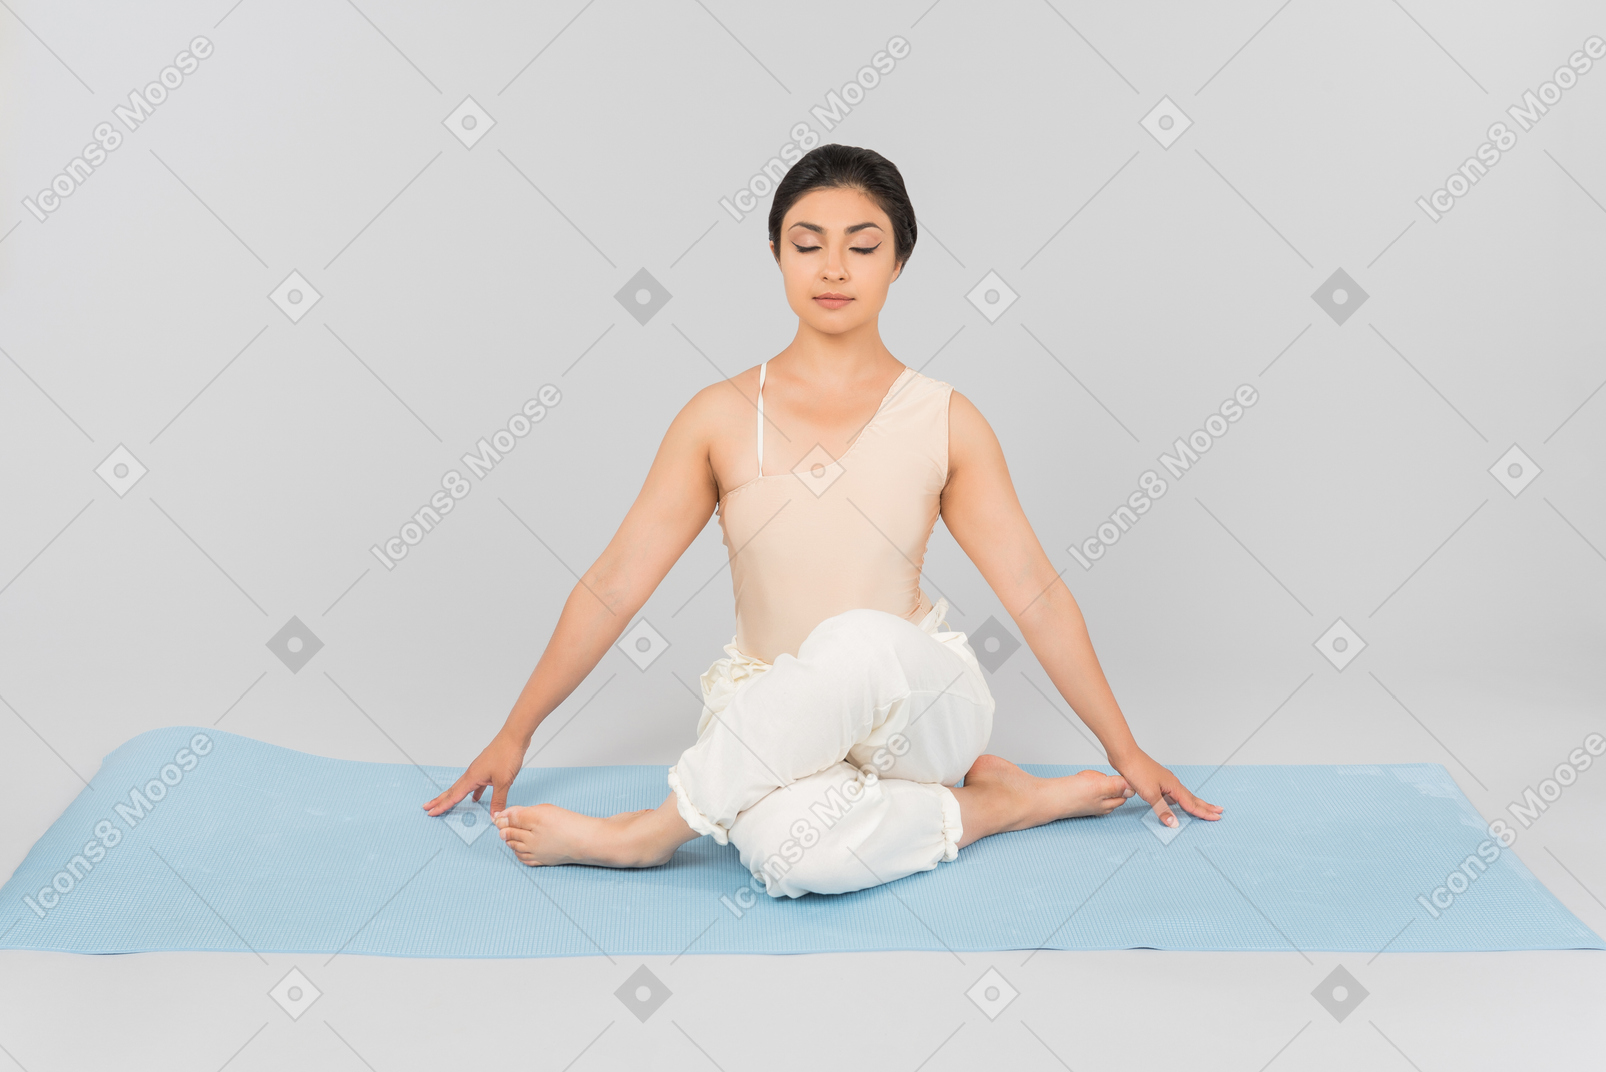 Jovem indiana sentado no tapete de ioga com as pernas cruzadas e os olhos fechados